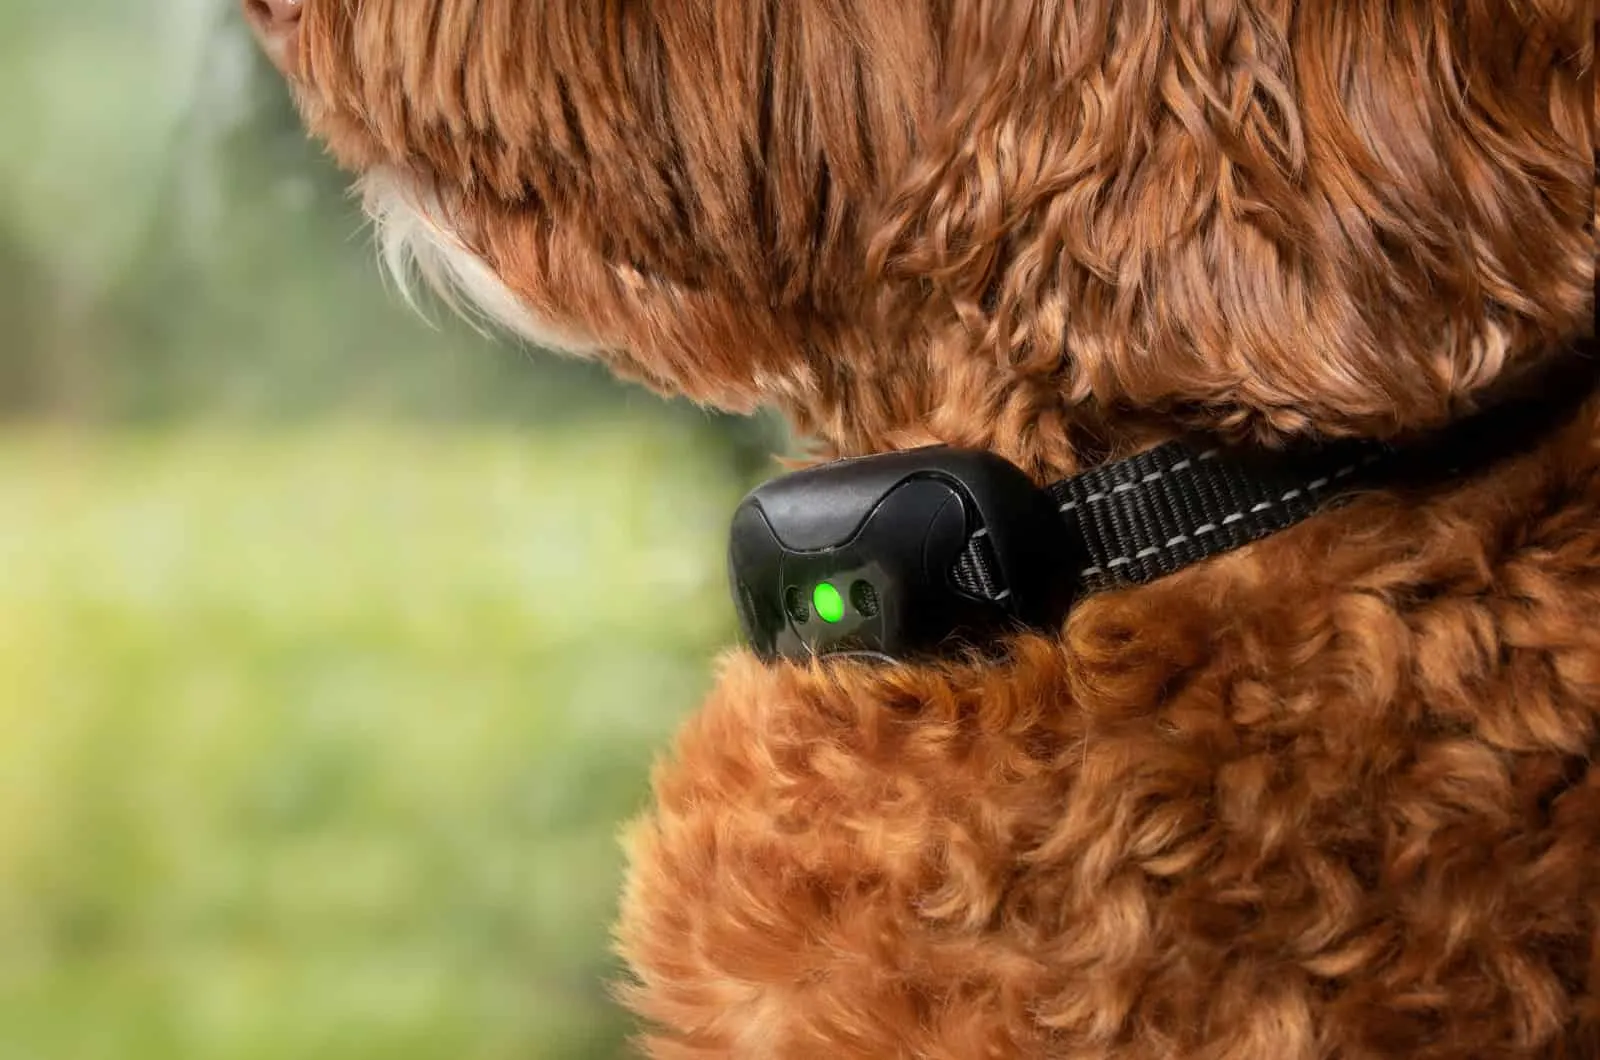 dog wearing a shock collar